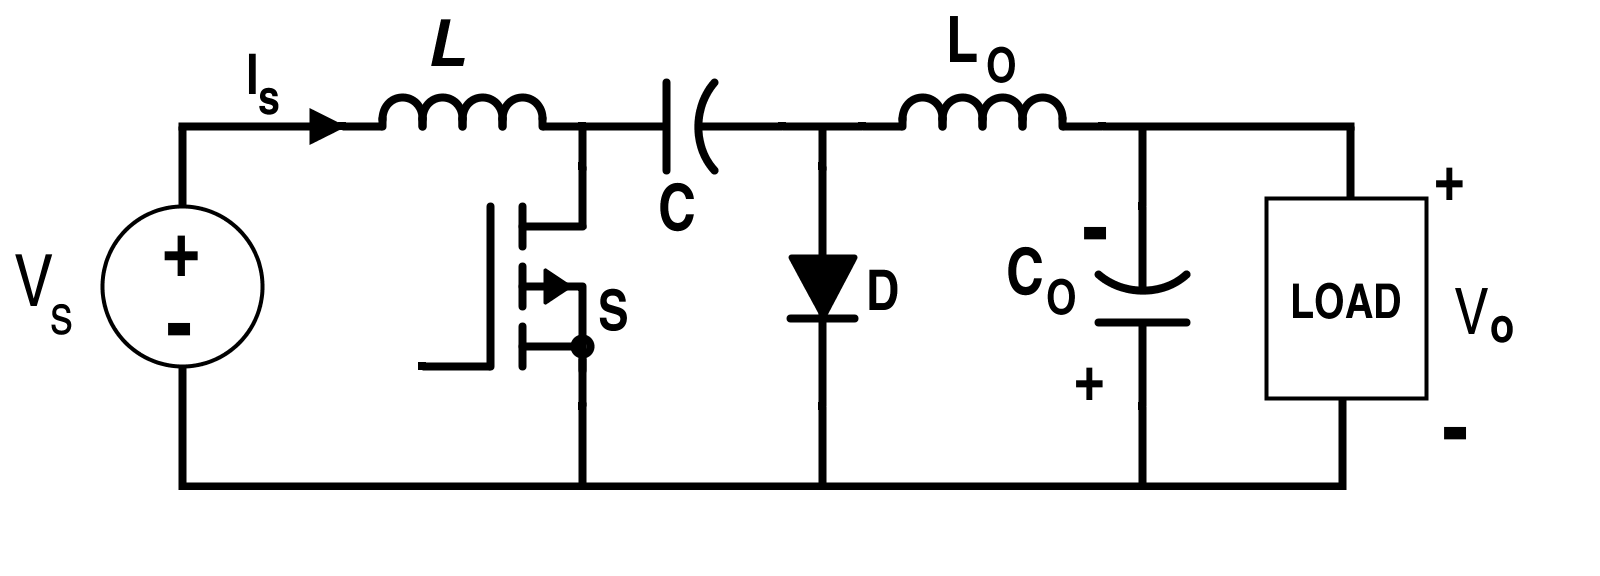 efficiency of cuk converter schematic